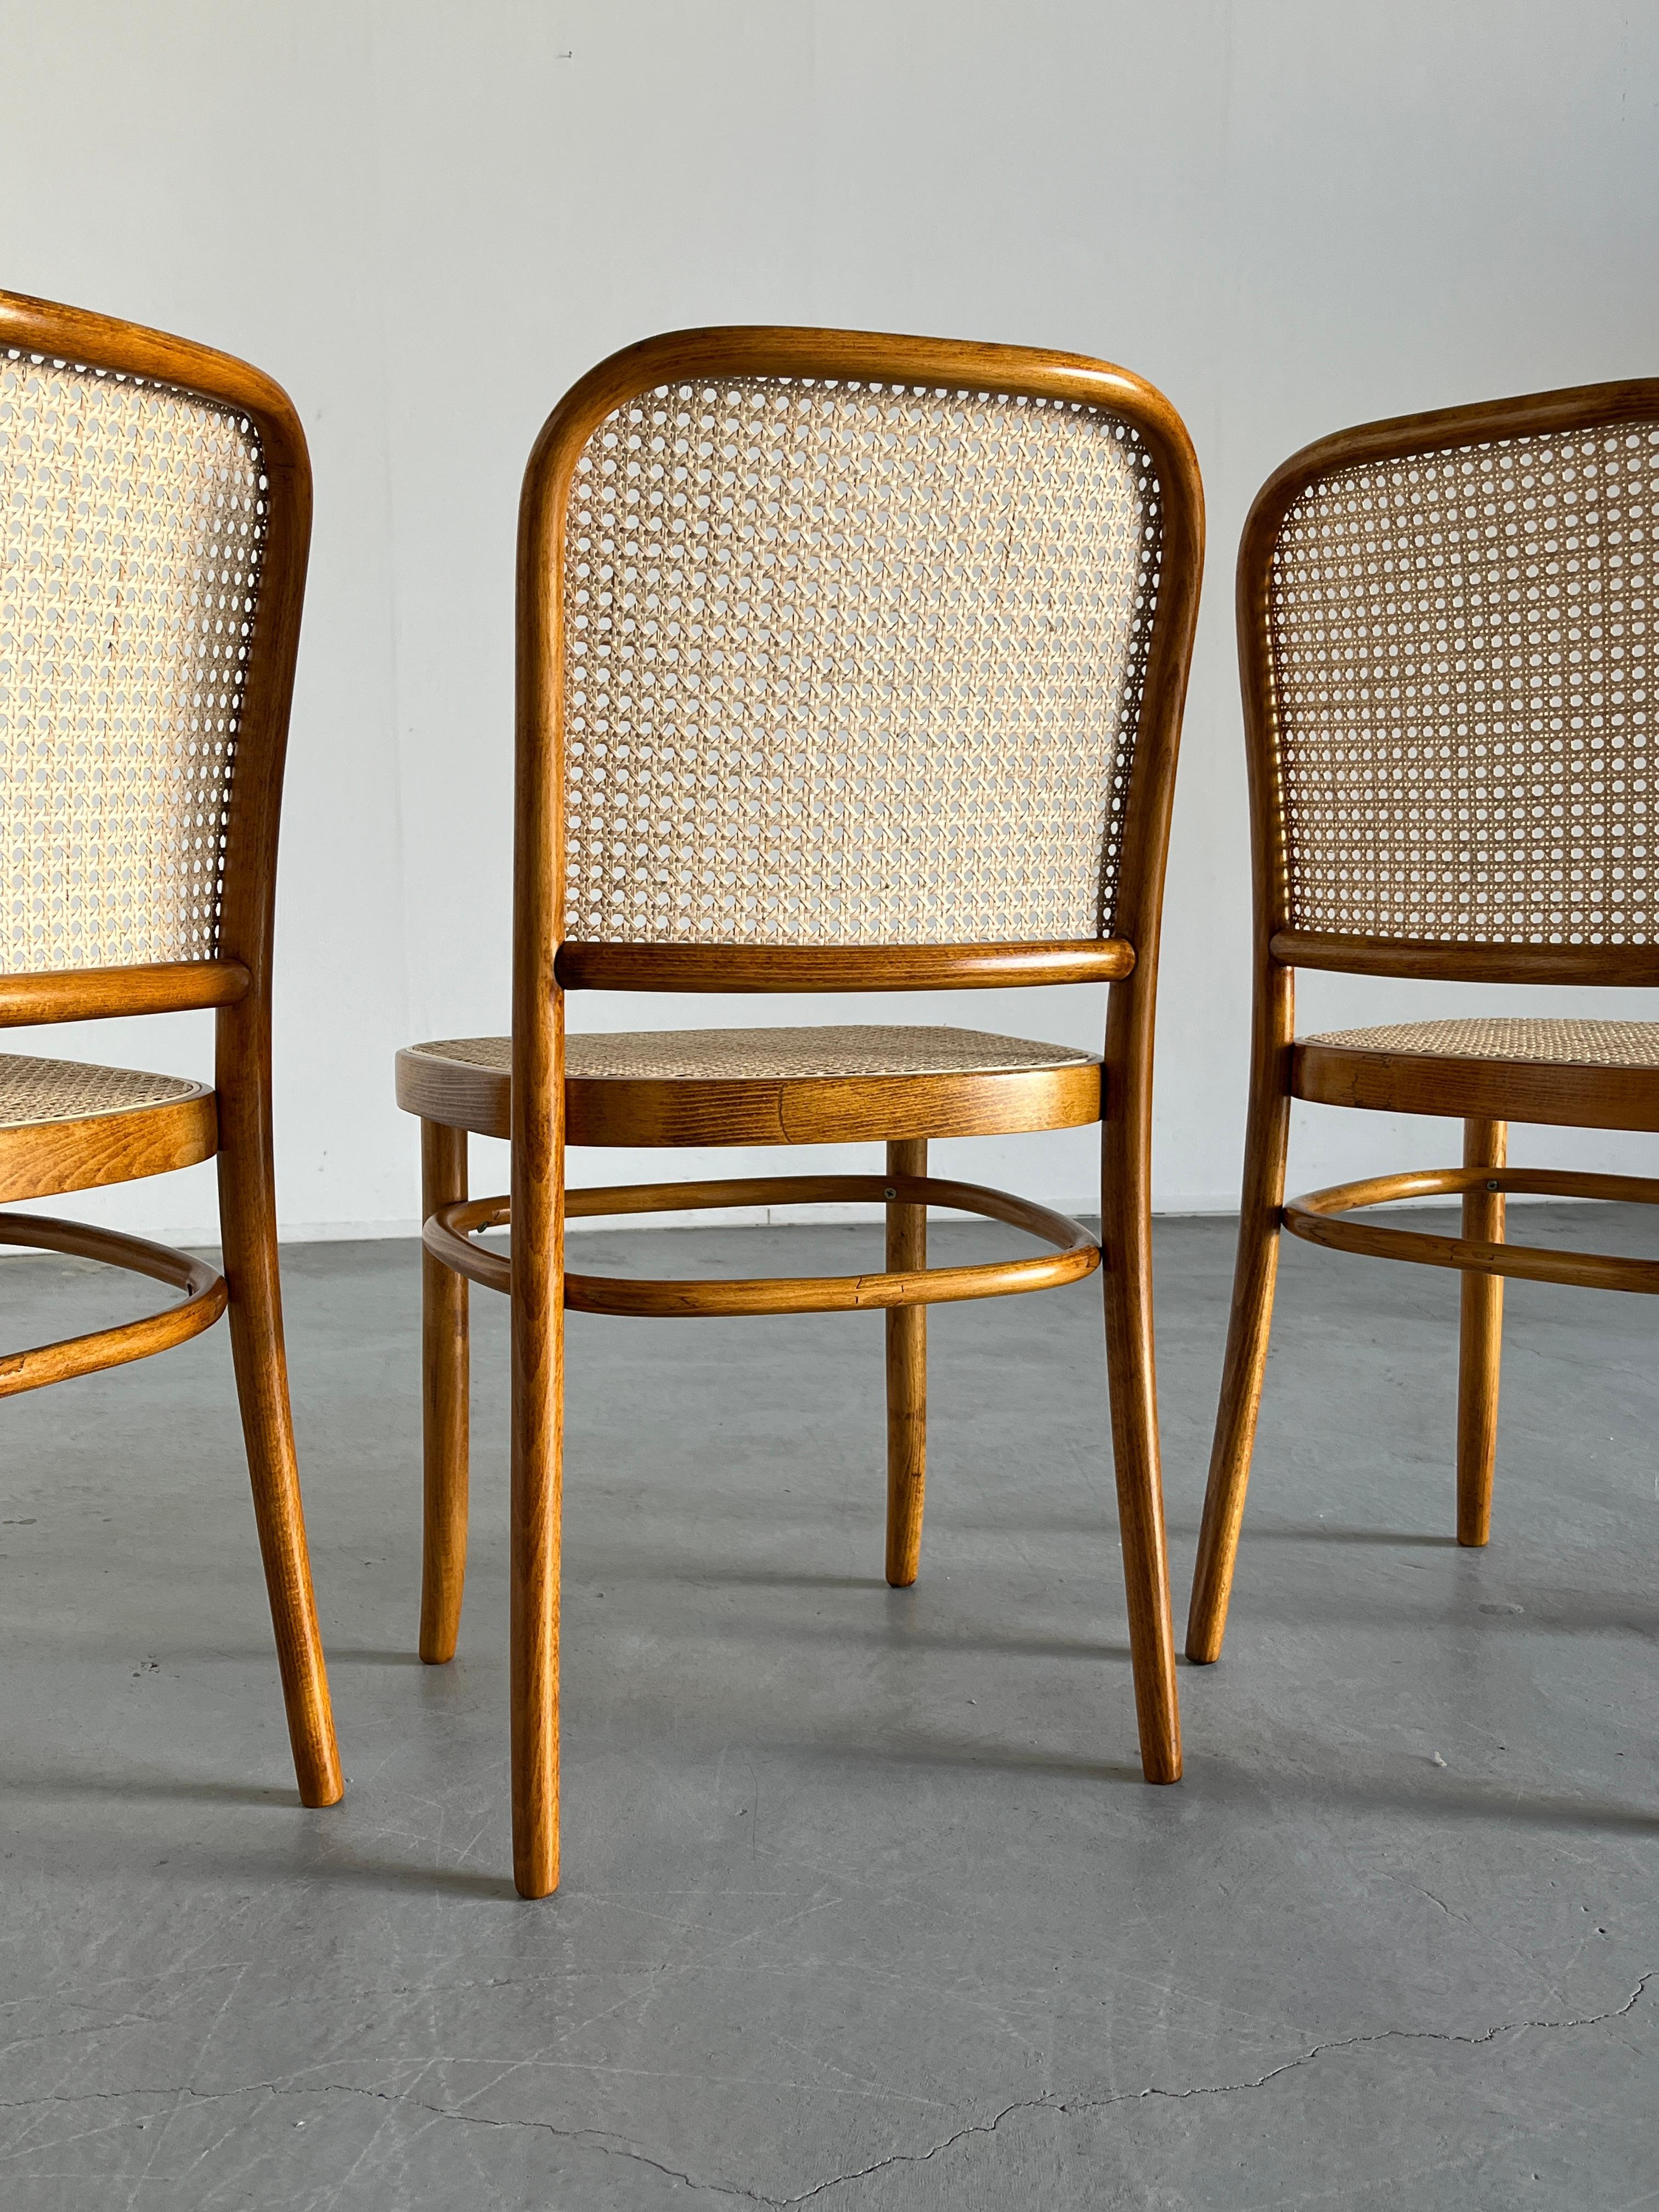 Canne 1 des 12 chaises vintage Thonet Bentwood Prague de Josef Hoffman, 1970, restaurées en vente